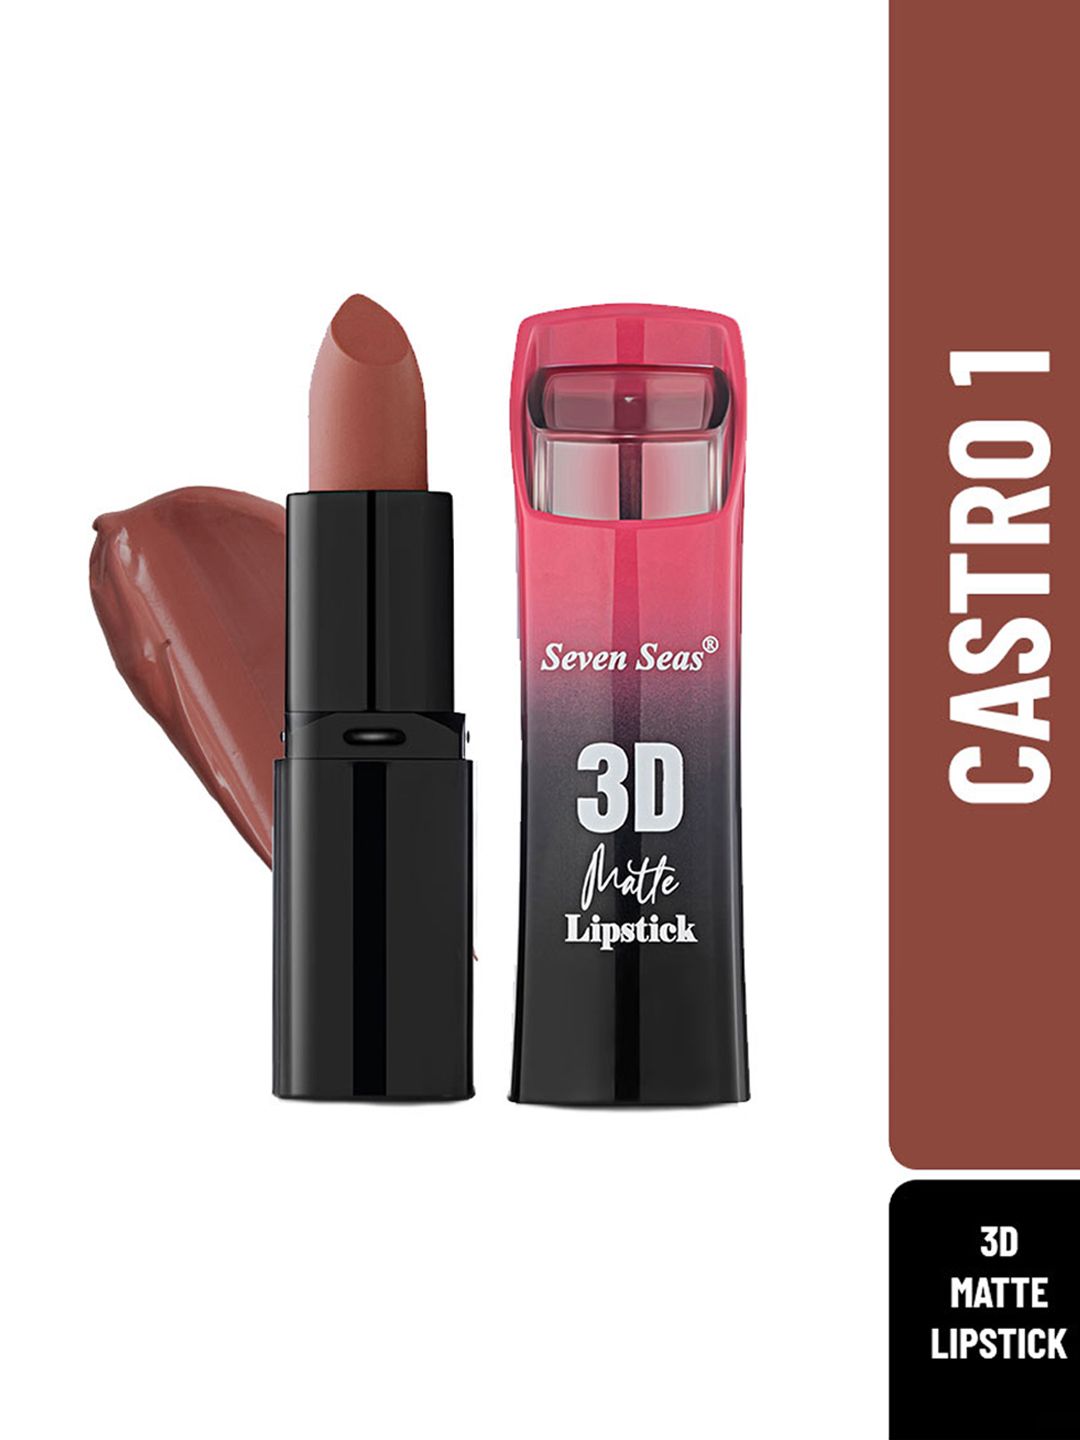 Seven Seas 3D Full Coverage Matte Lipstick, 3.8gm - Castro 1 Price in India